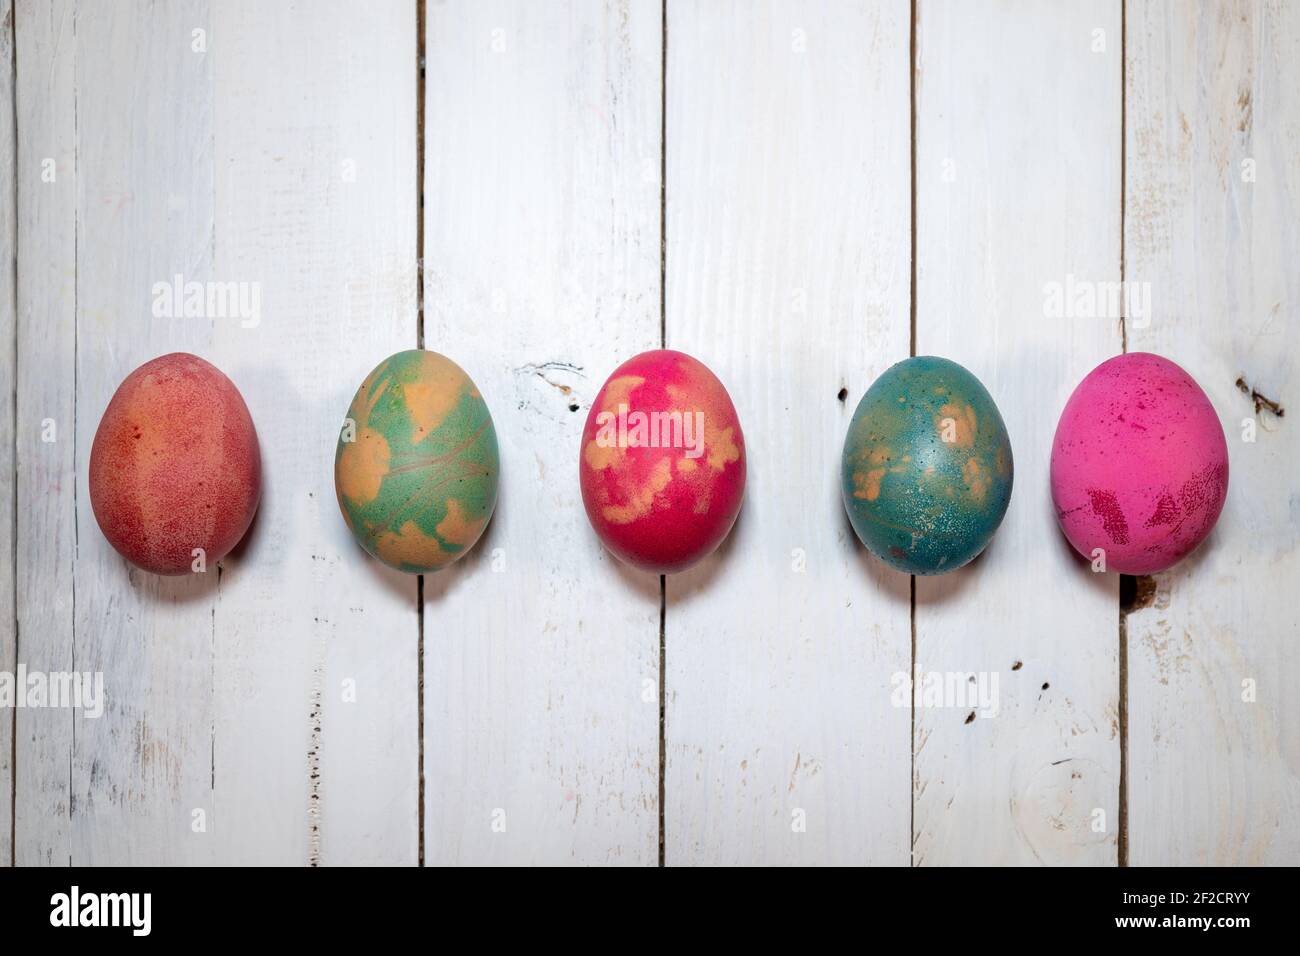 Eine hausgemachte natürliche Art, Ostereier zu dekorieren. Fünf gekochte Eier mit Farben, Blättern und Blumen auf einem schäbigen schicken Holztisch bemalt. Stockfoto